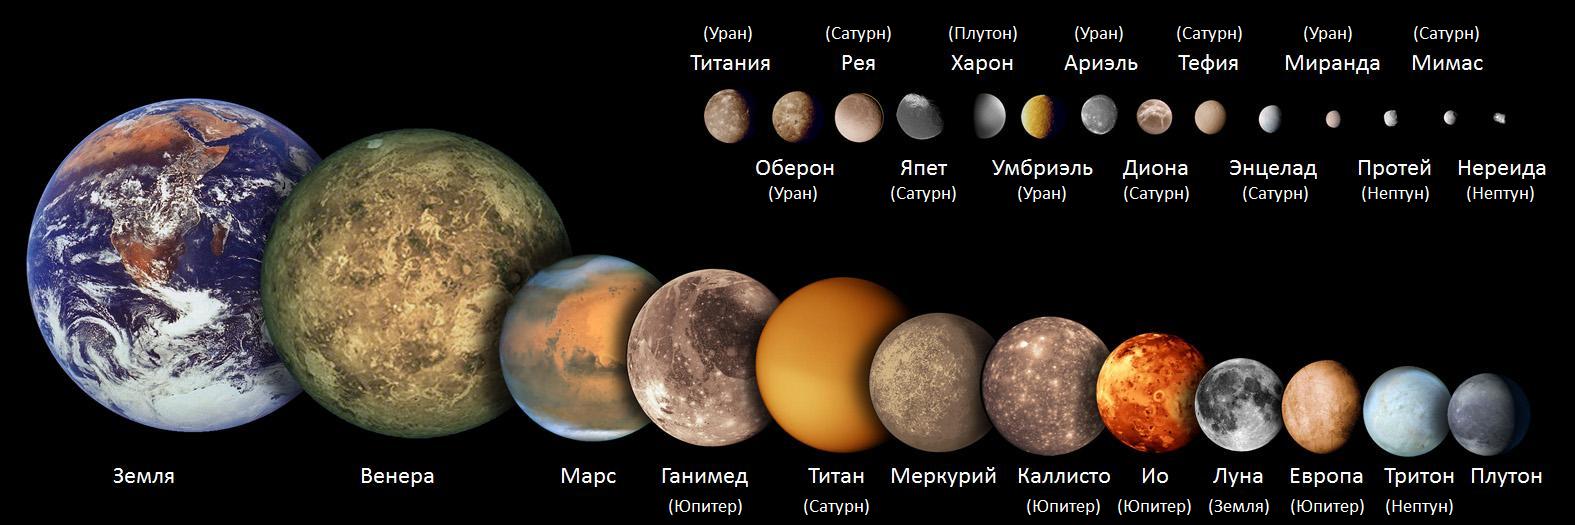 Марс в астрологии: за что отвечает планета, цикл, символика, значение, влияние на женщин и мужчин, роль его аспектов